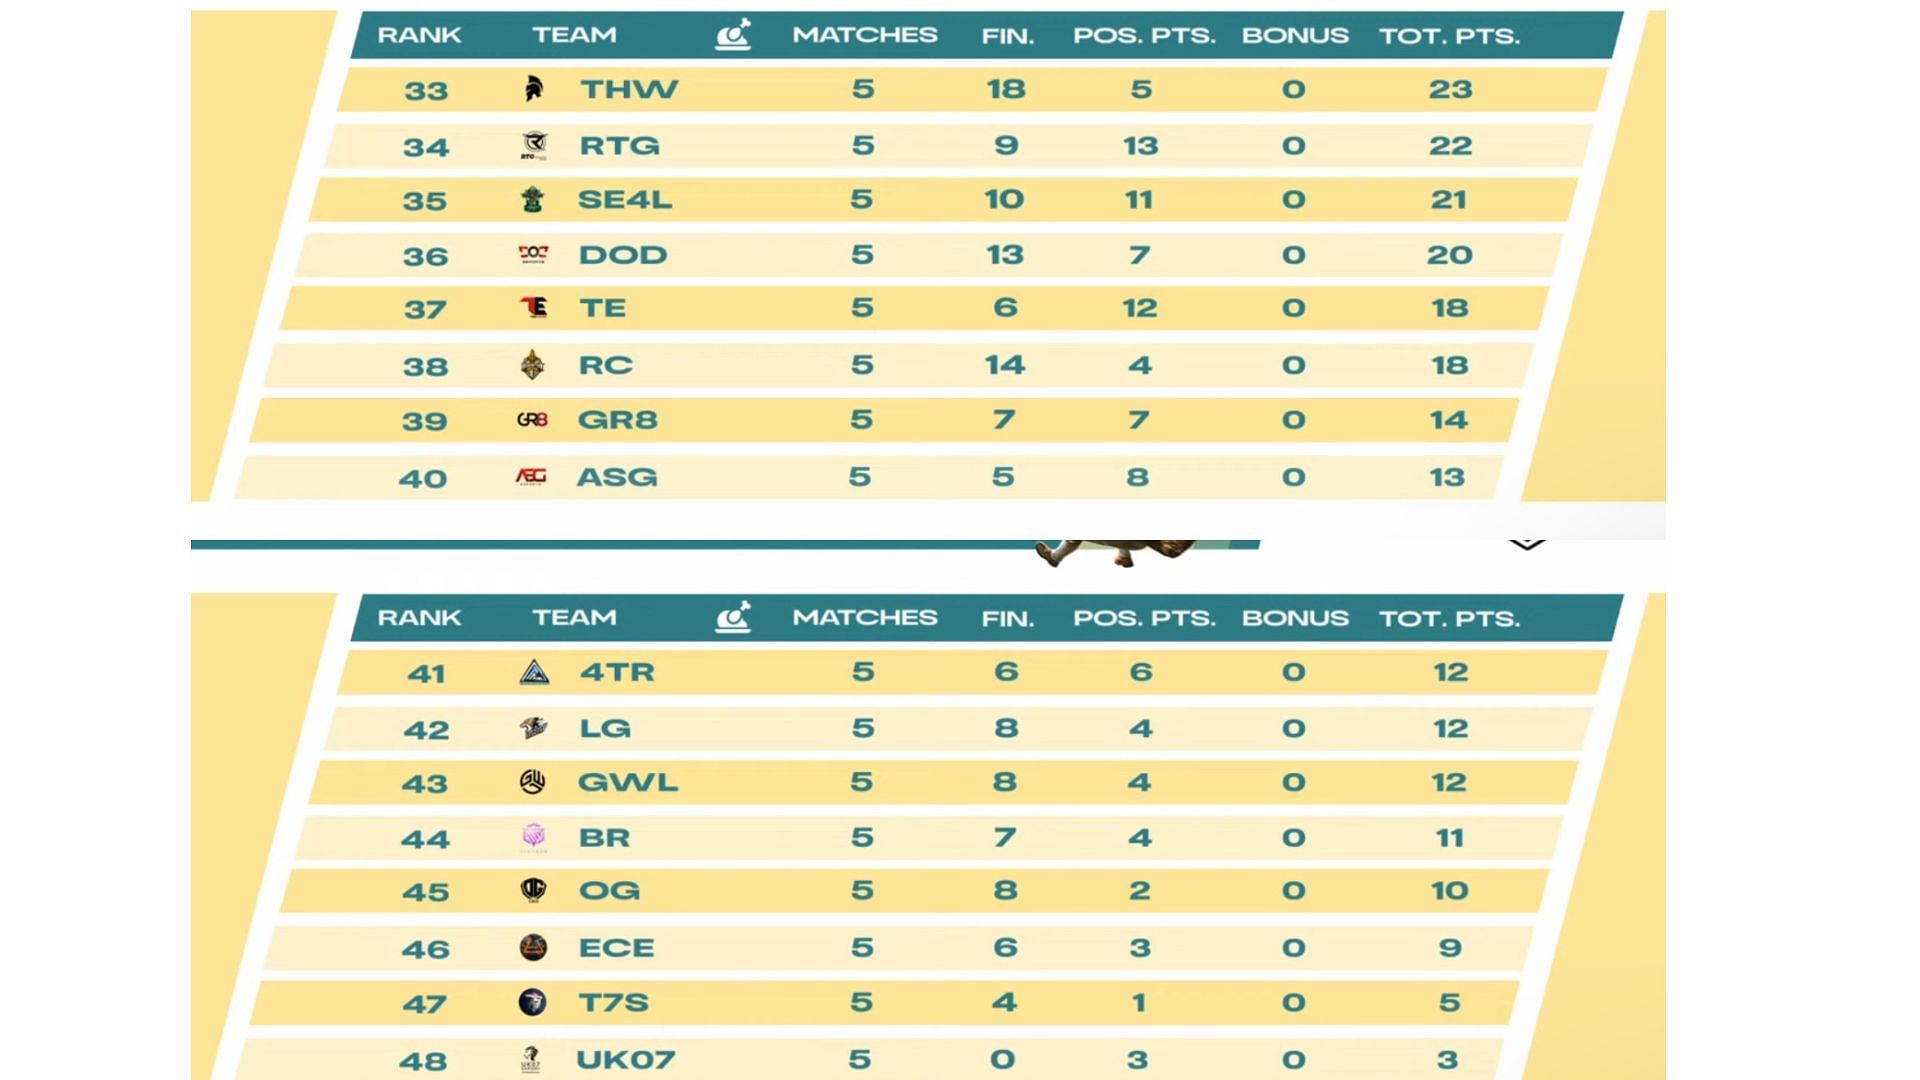 Bottom 16 teams standings of Week 1 (Image via BGMI)